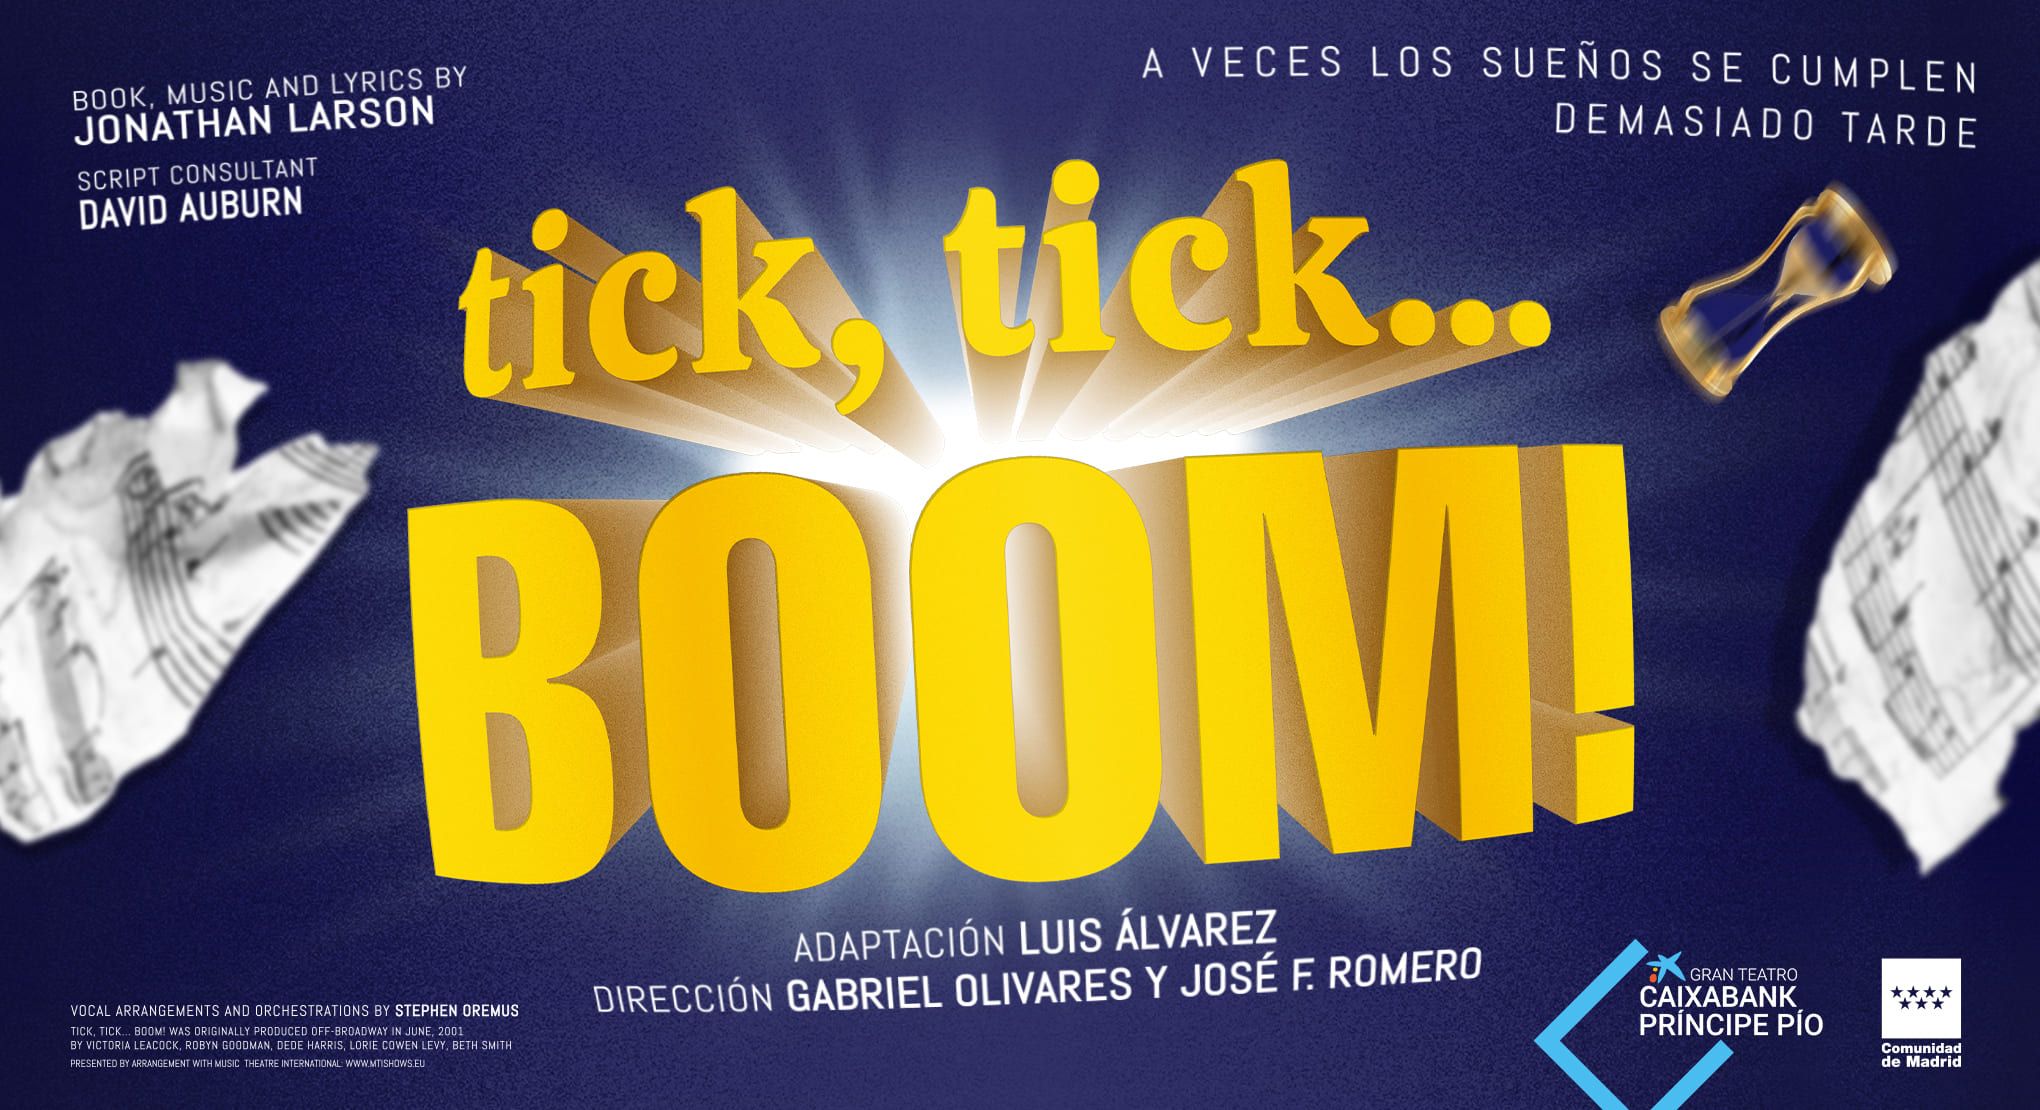 TICK, TICK… BOOM! en el Gran Teatro Caixabank Príncipe Pío